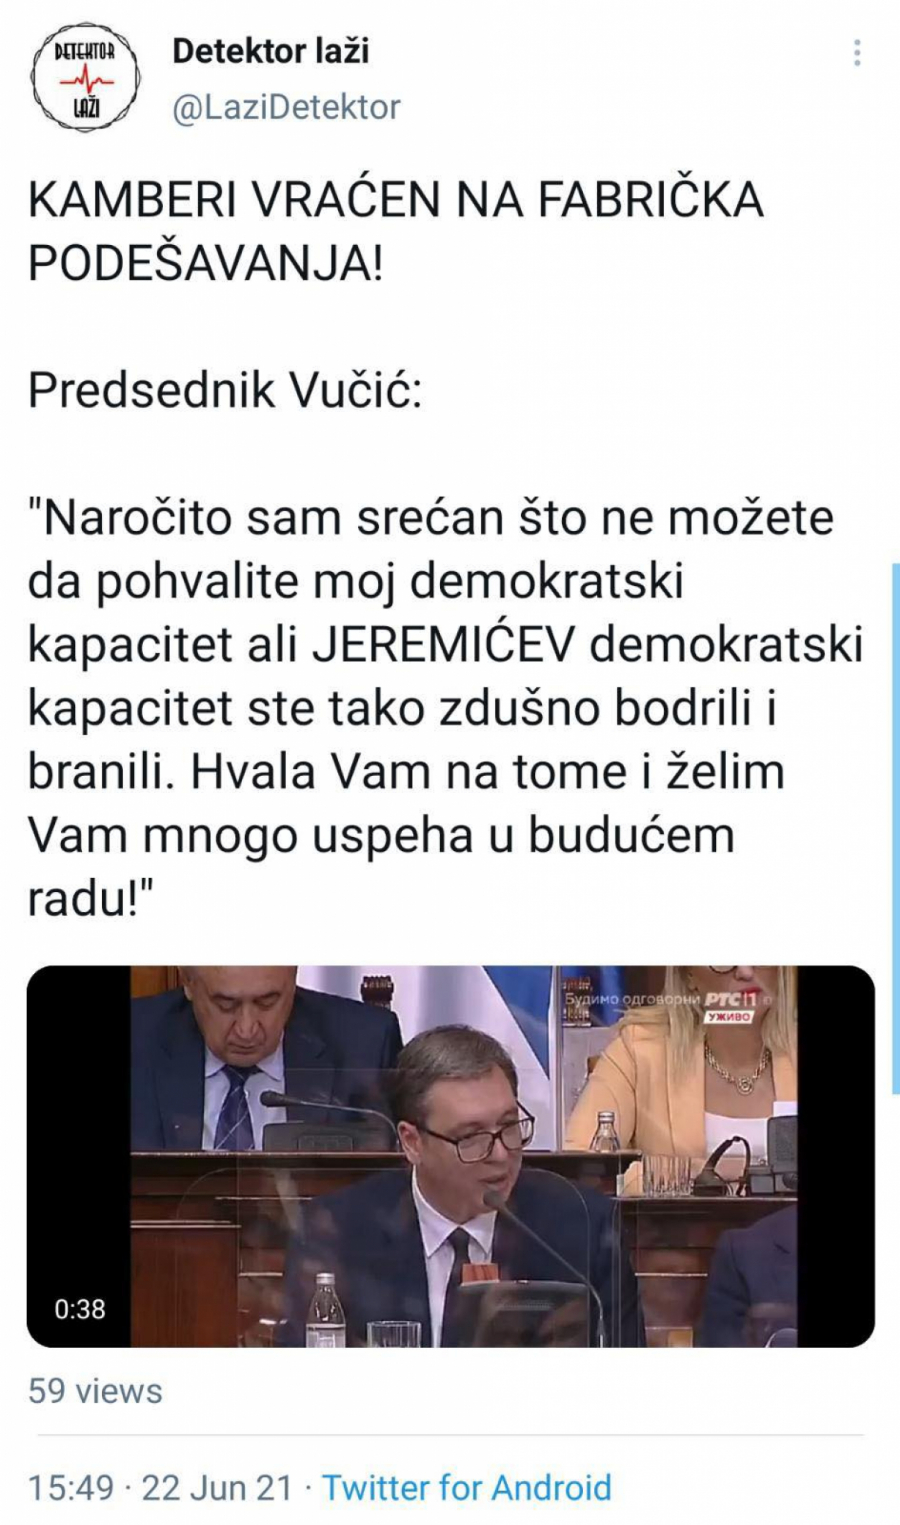 KAMBERI VRAĆEN NA FABRIČKA PODEŠAVANJA! Vučić: Srećan sam što ne hvalite moj demokratski kapacitet, ali Jeremićev ste tako zdušno branili (VIDEO)